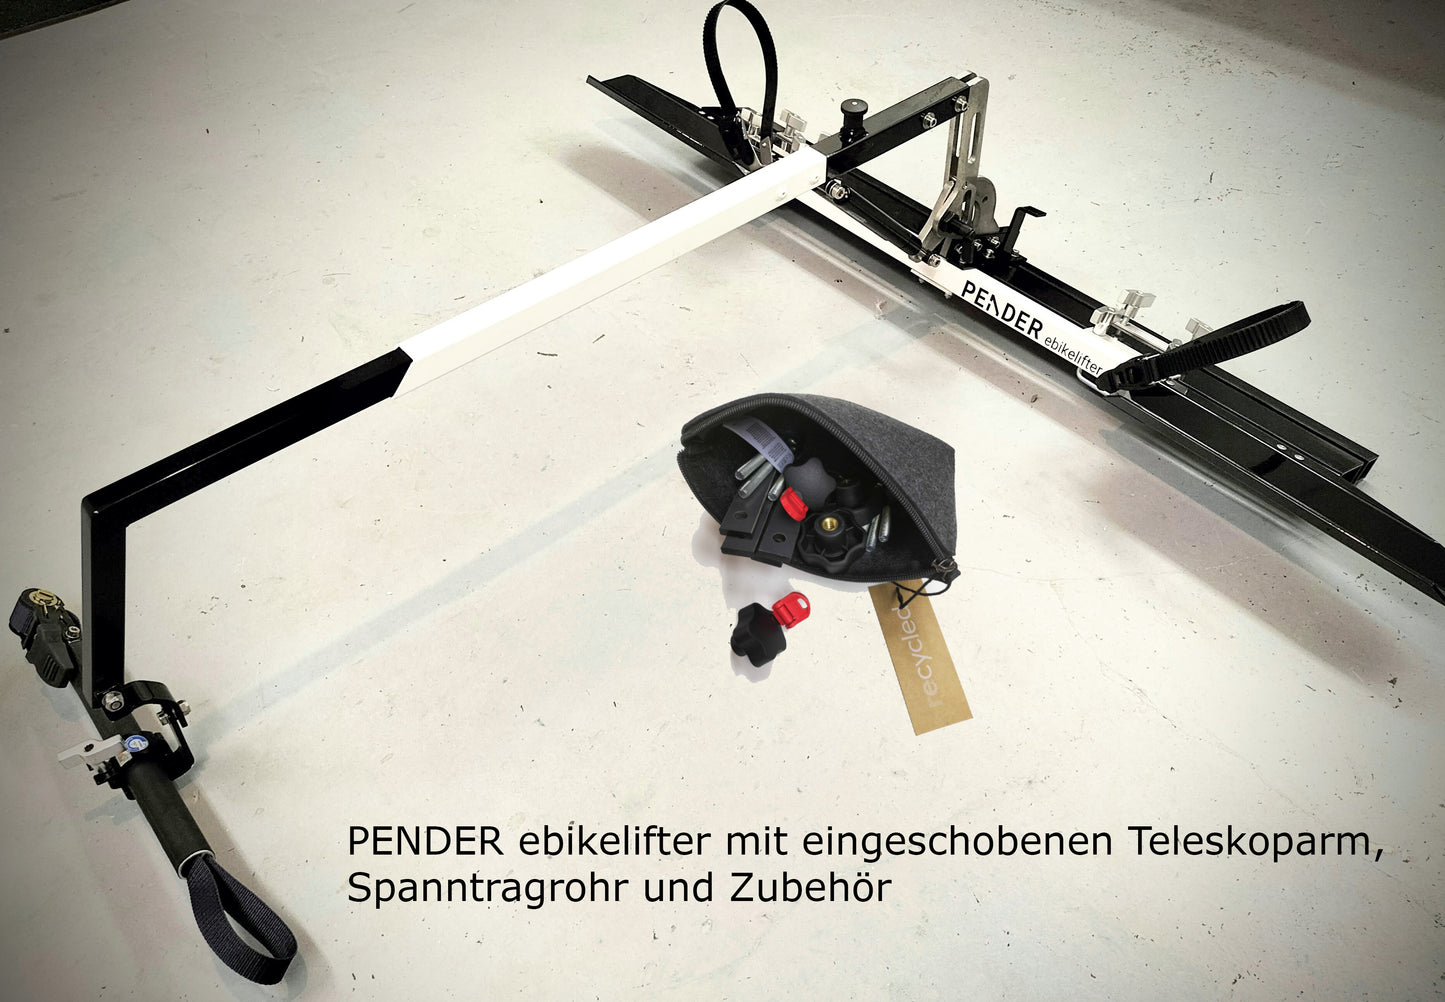 PENDER ebikelifter -  Dachlifter für E-bikes und Pedelecs